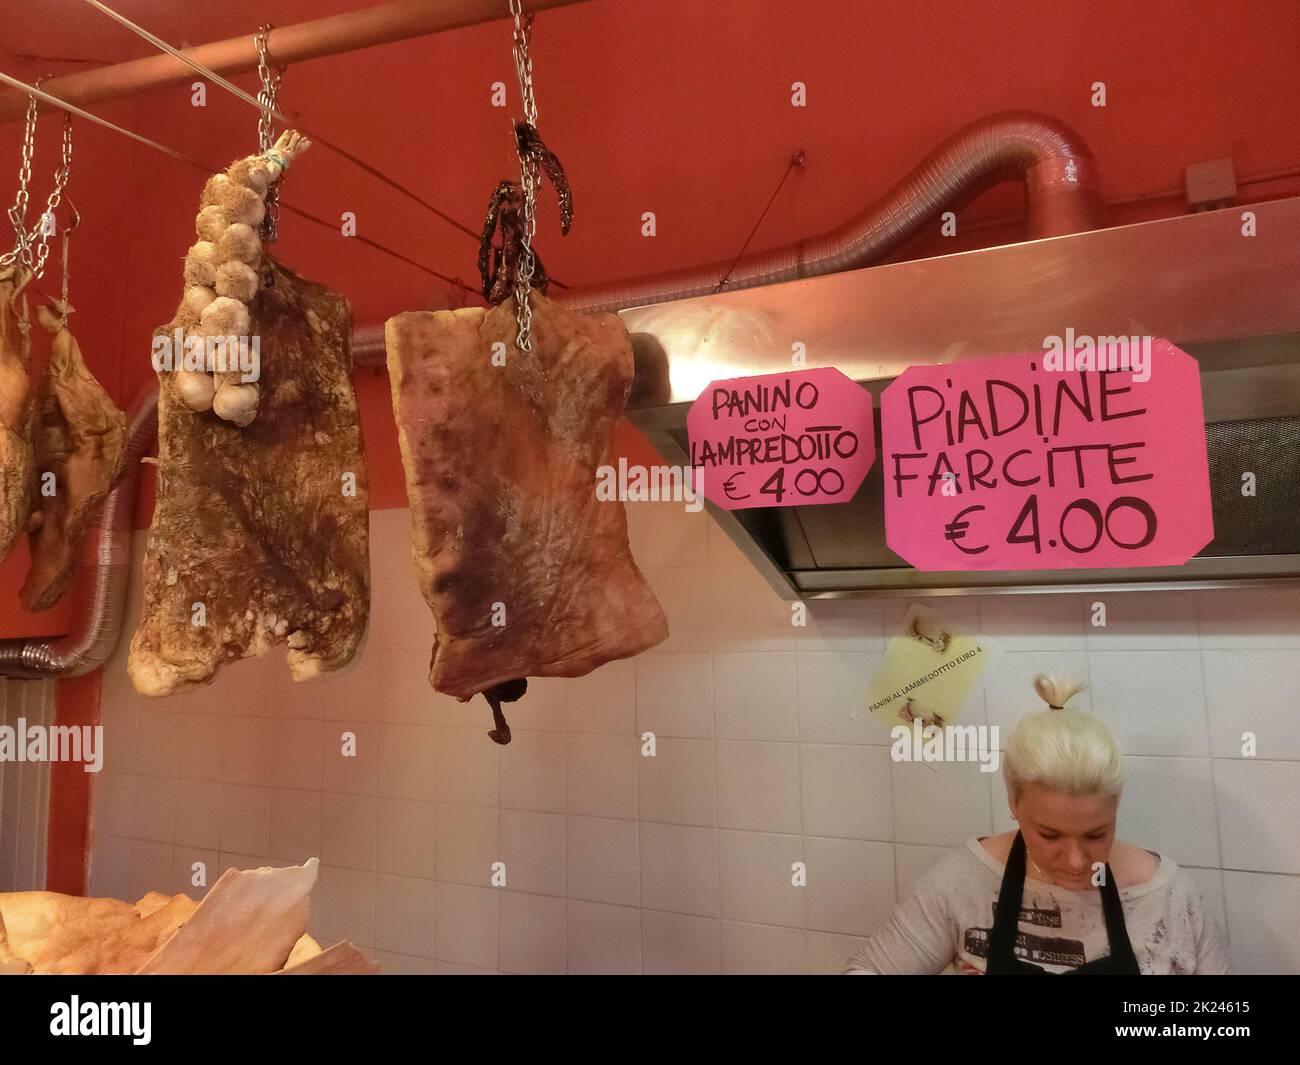 Florence, Italie - 01 mai 2014 : un magasin ou un magasin pour la vente de sandwiches traditionnels en tripe à Florence. Banque D'Images